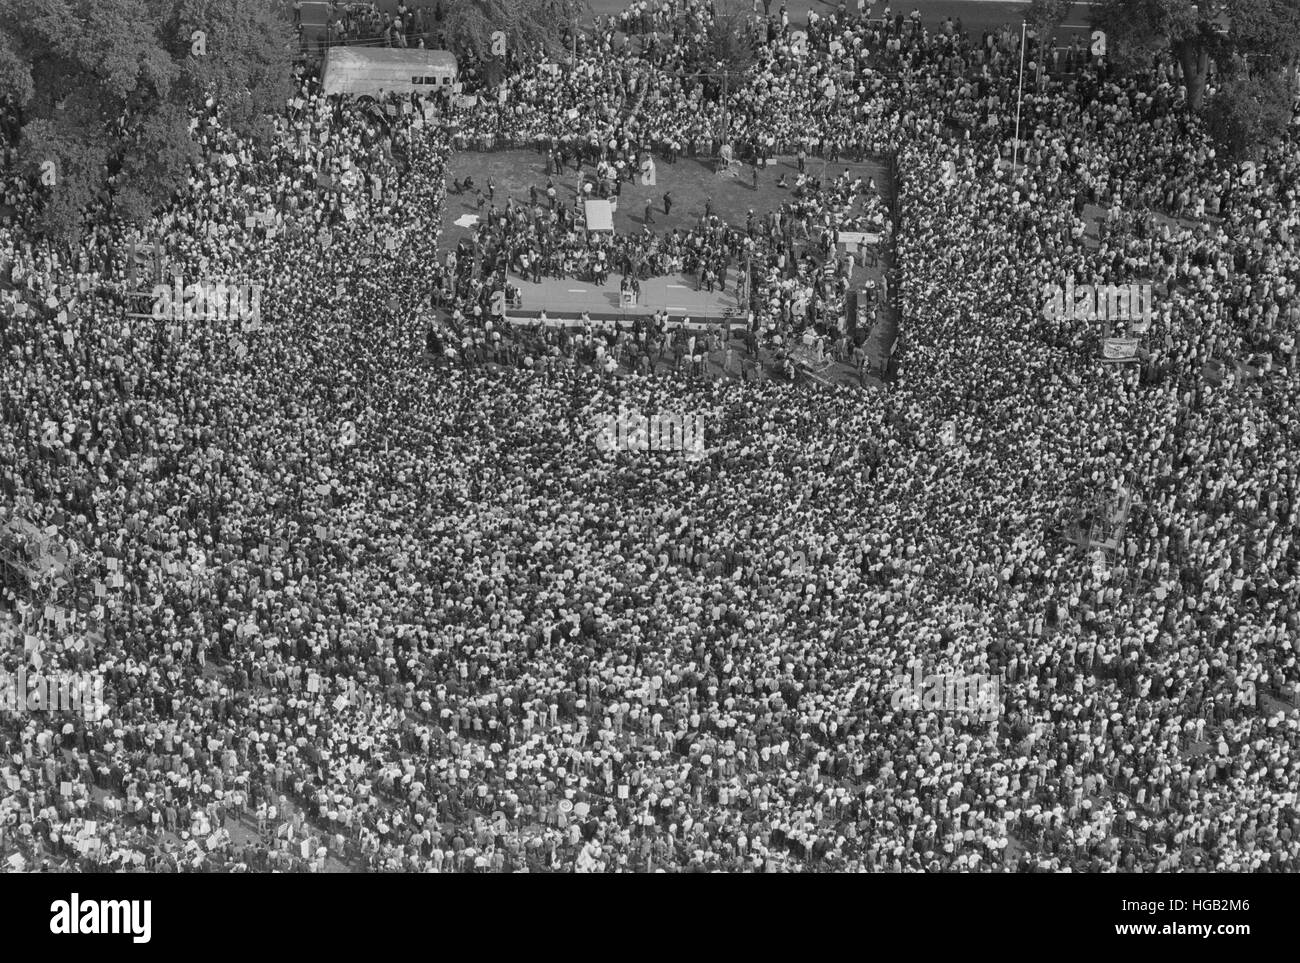 28. August 1963 - Luftbild von Publikum und Bühne auf dem Marsch auf Washington. Stockfoto